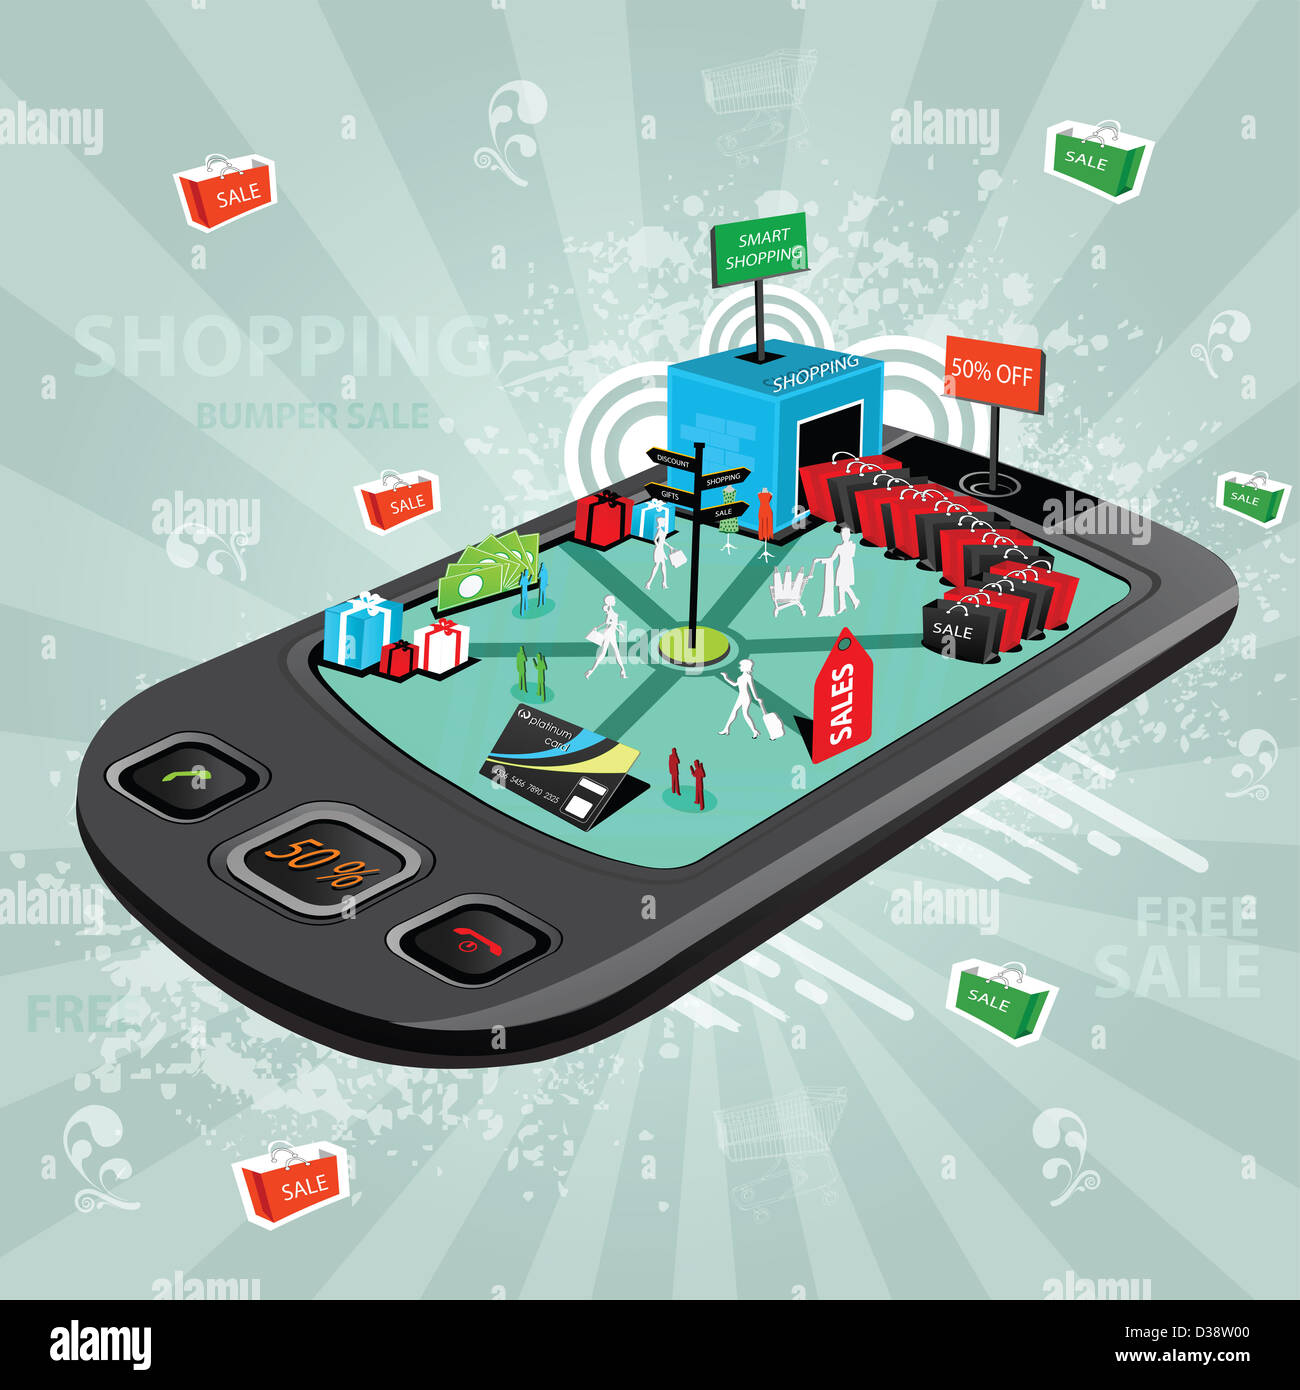 Anschauliche Darstellung zeigt die Verwendung eines Mobiltelefons für e-shopping Stockfoto